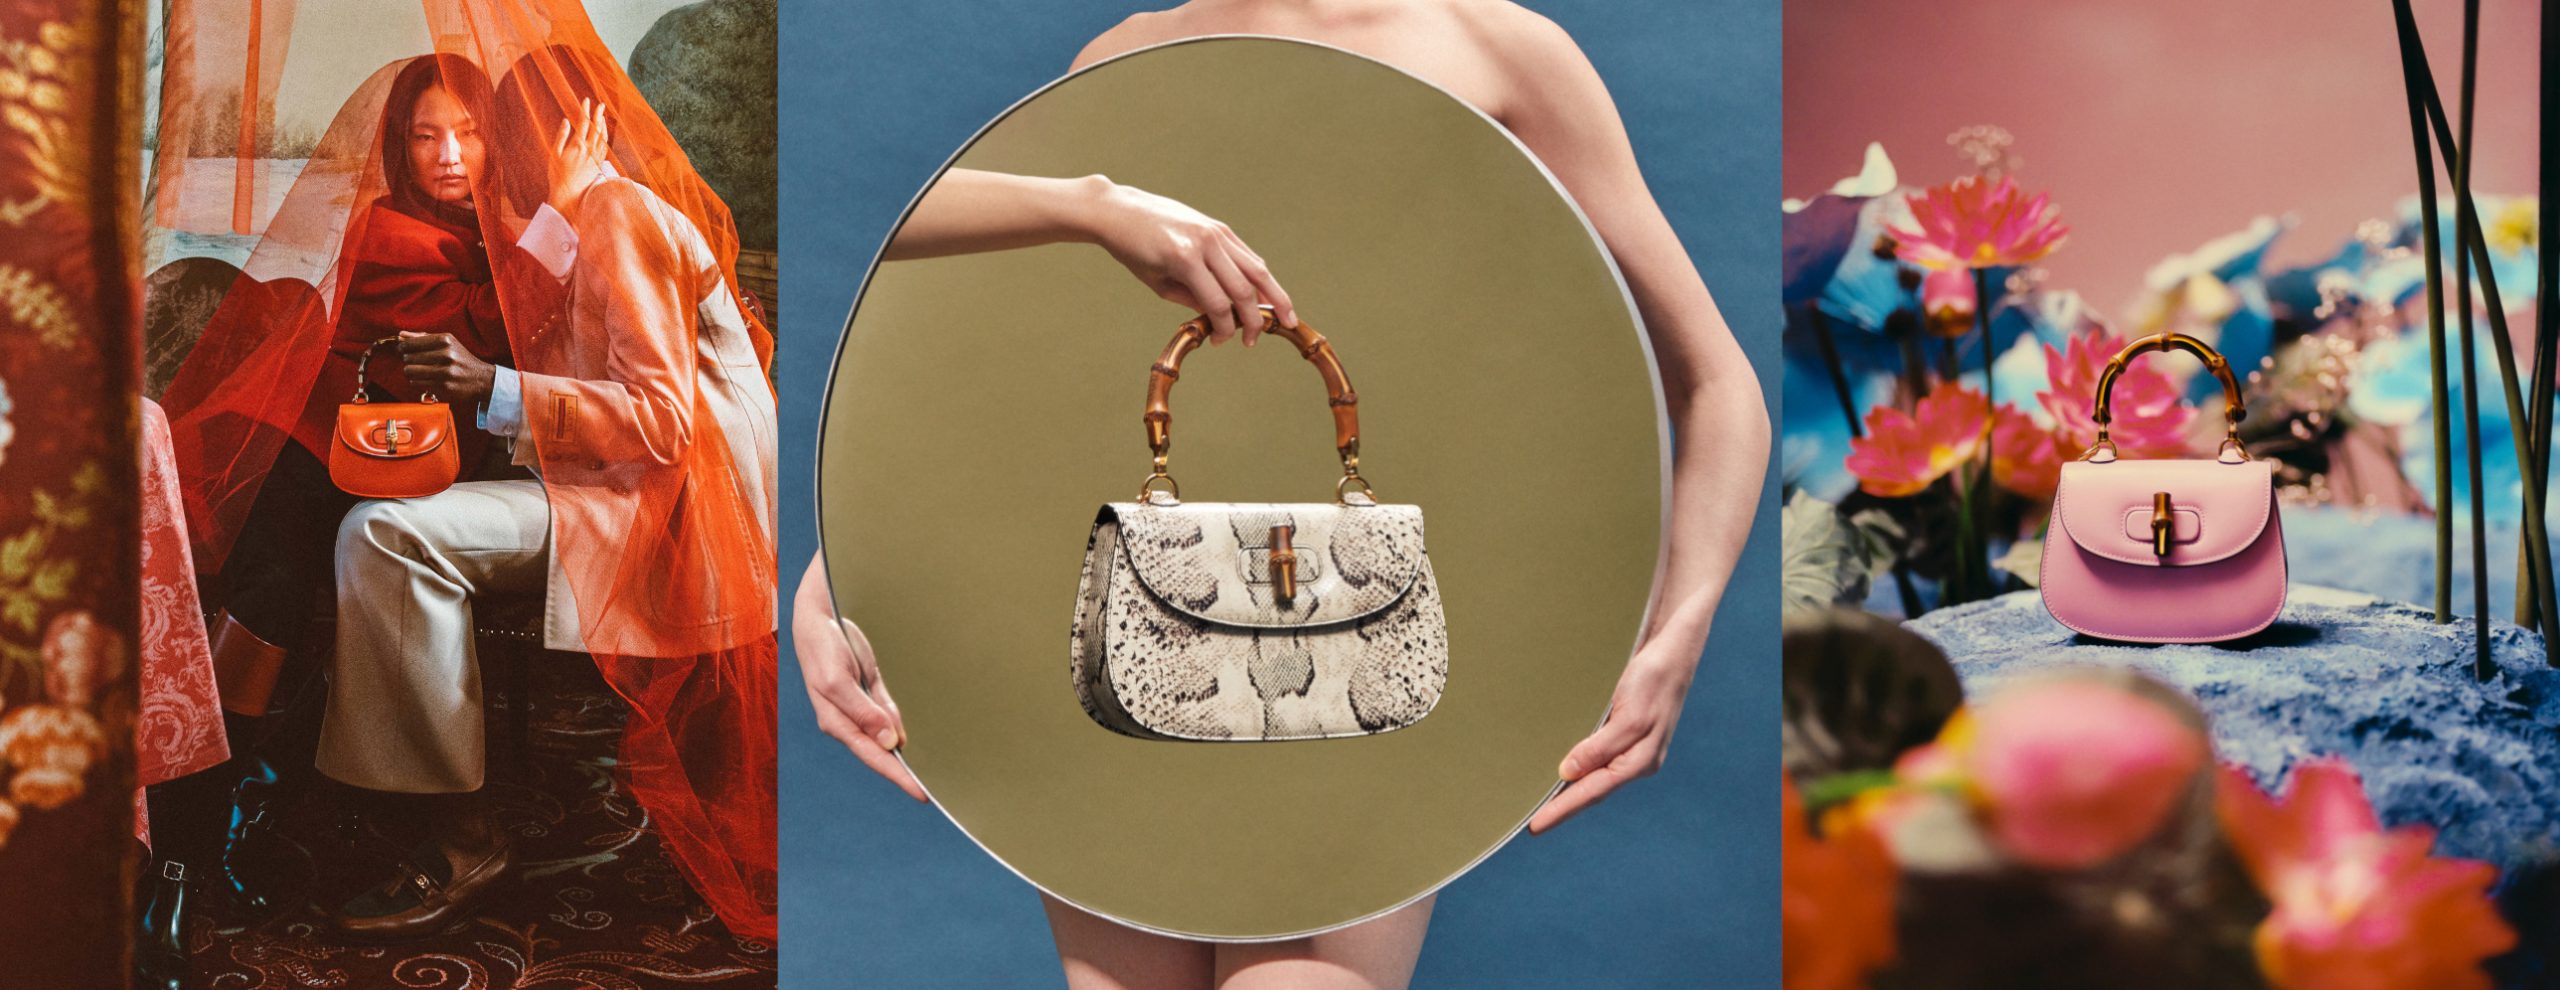 Gucci Bamboo 1947 Handbag Campaign Release